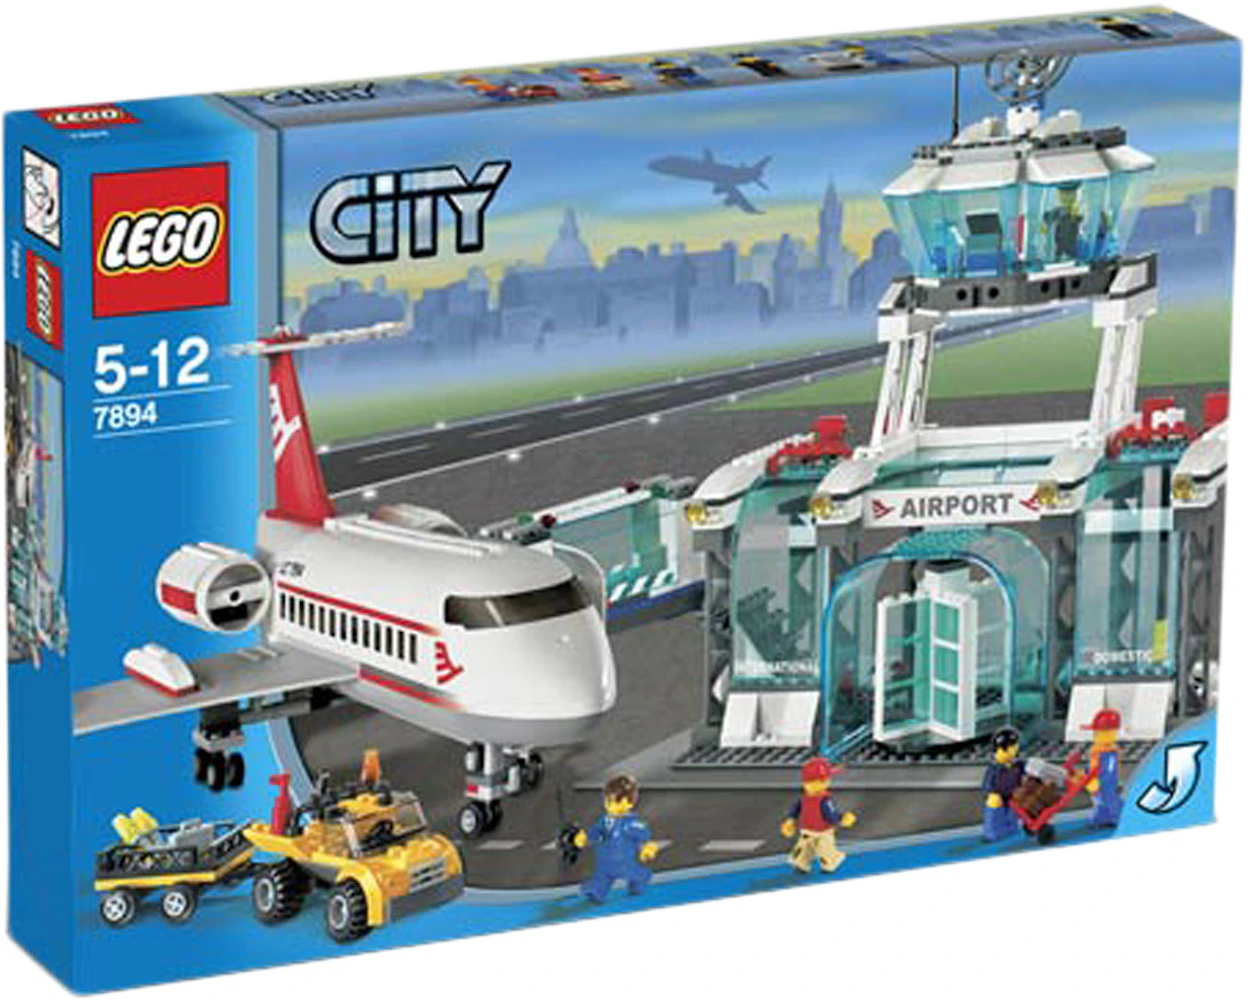 LEGO City Set 7894 - JP